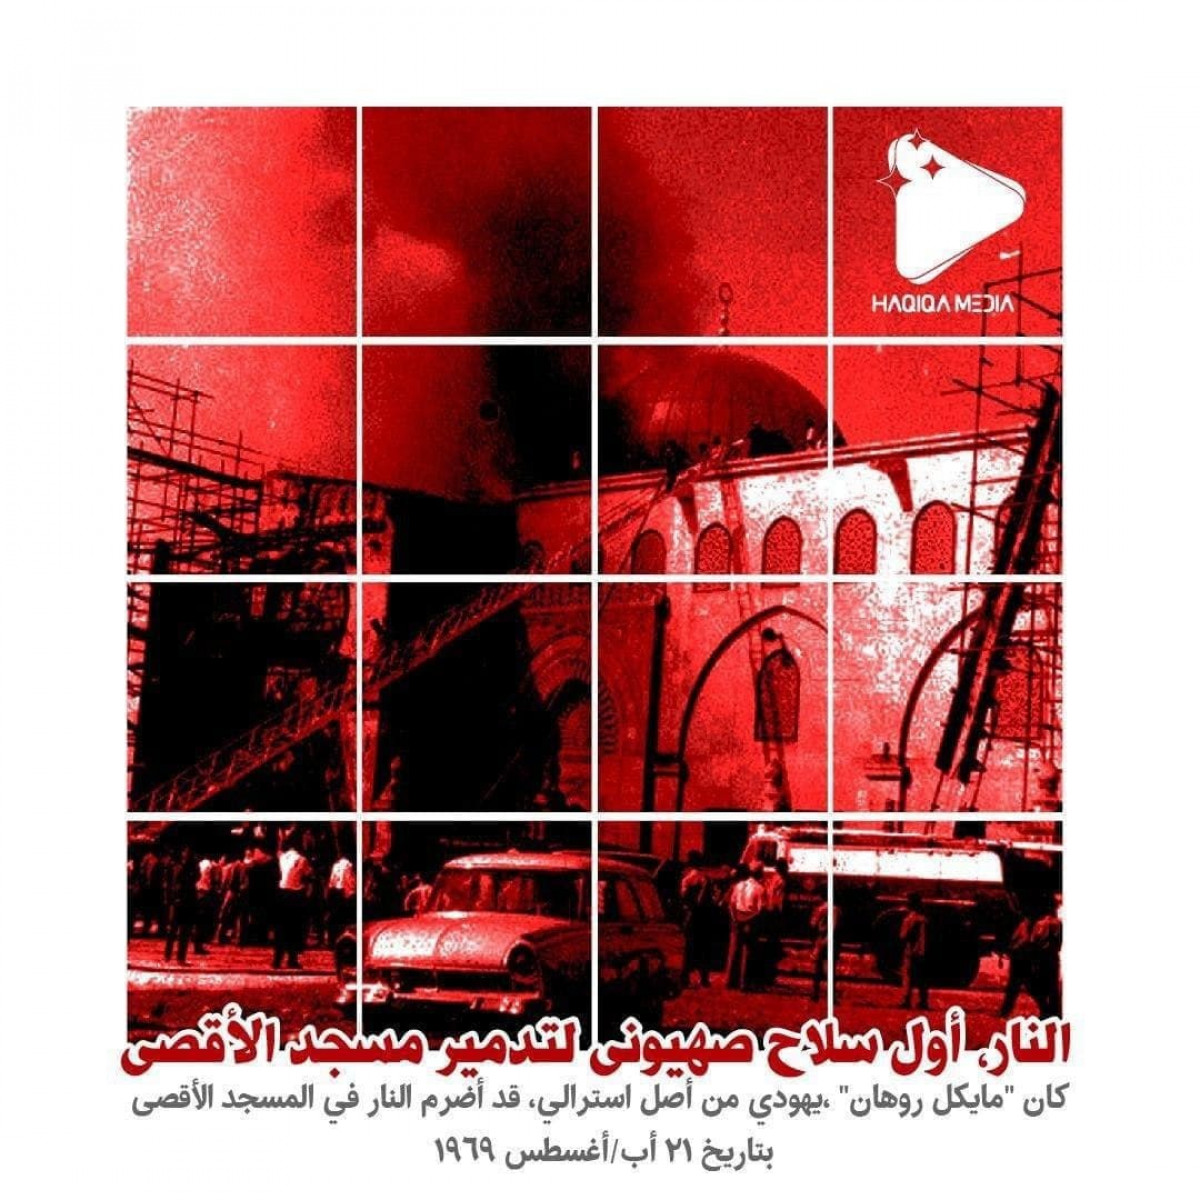 النار أول سلاح صهيوني لتدمير المسجدالأقصى